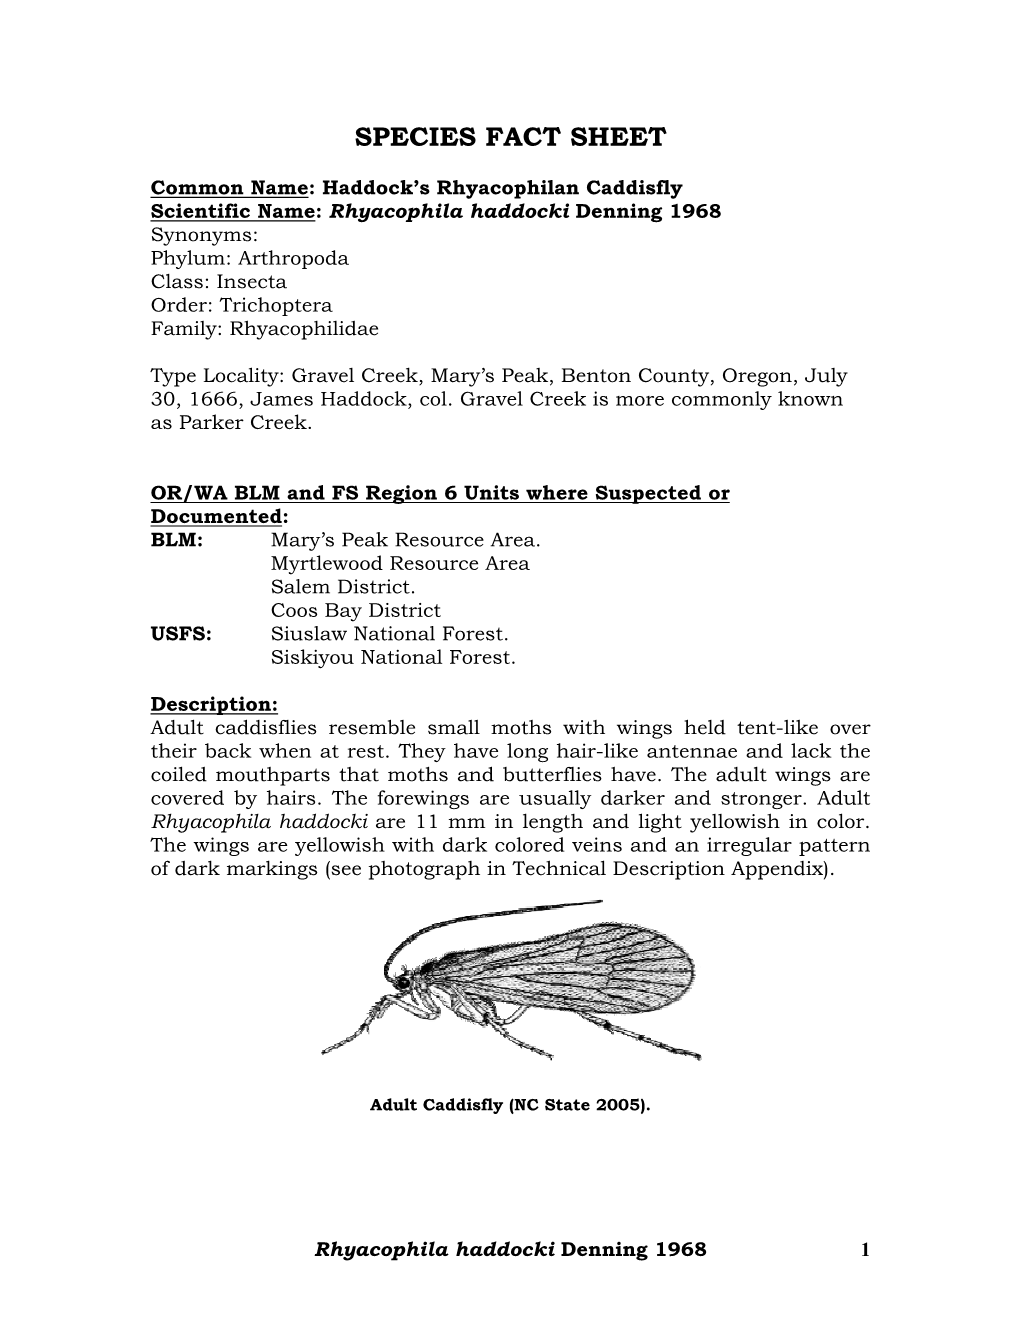 Rhyacophila Haddocki SPECIES FACT SHEET